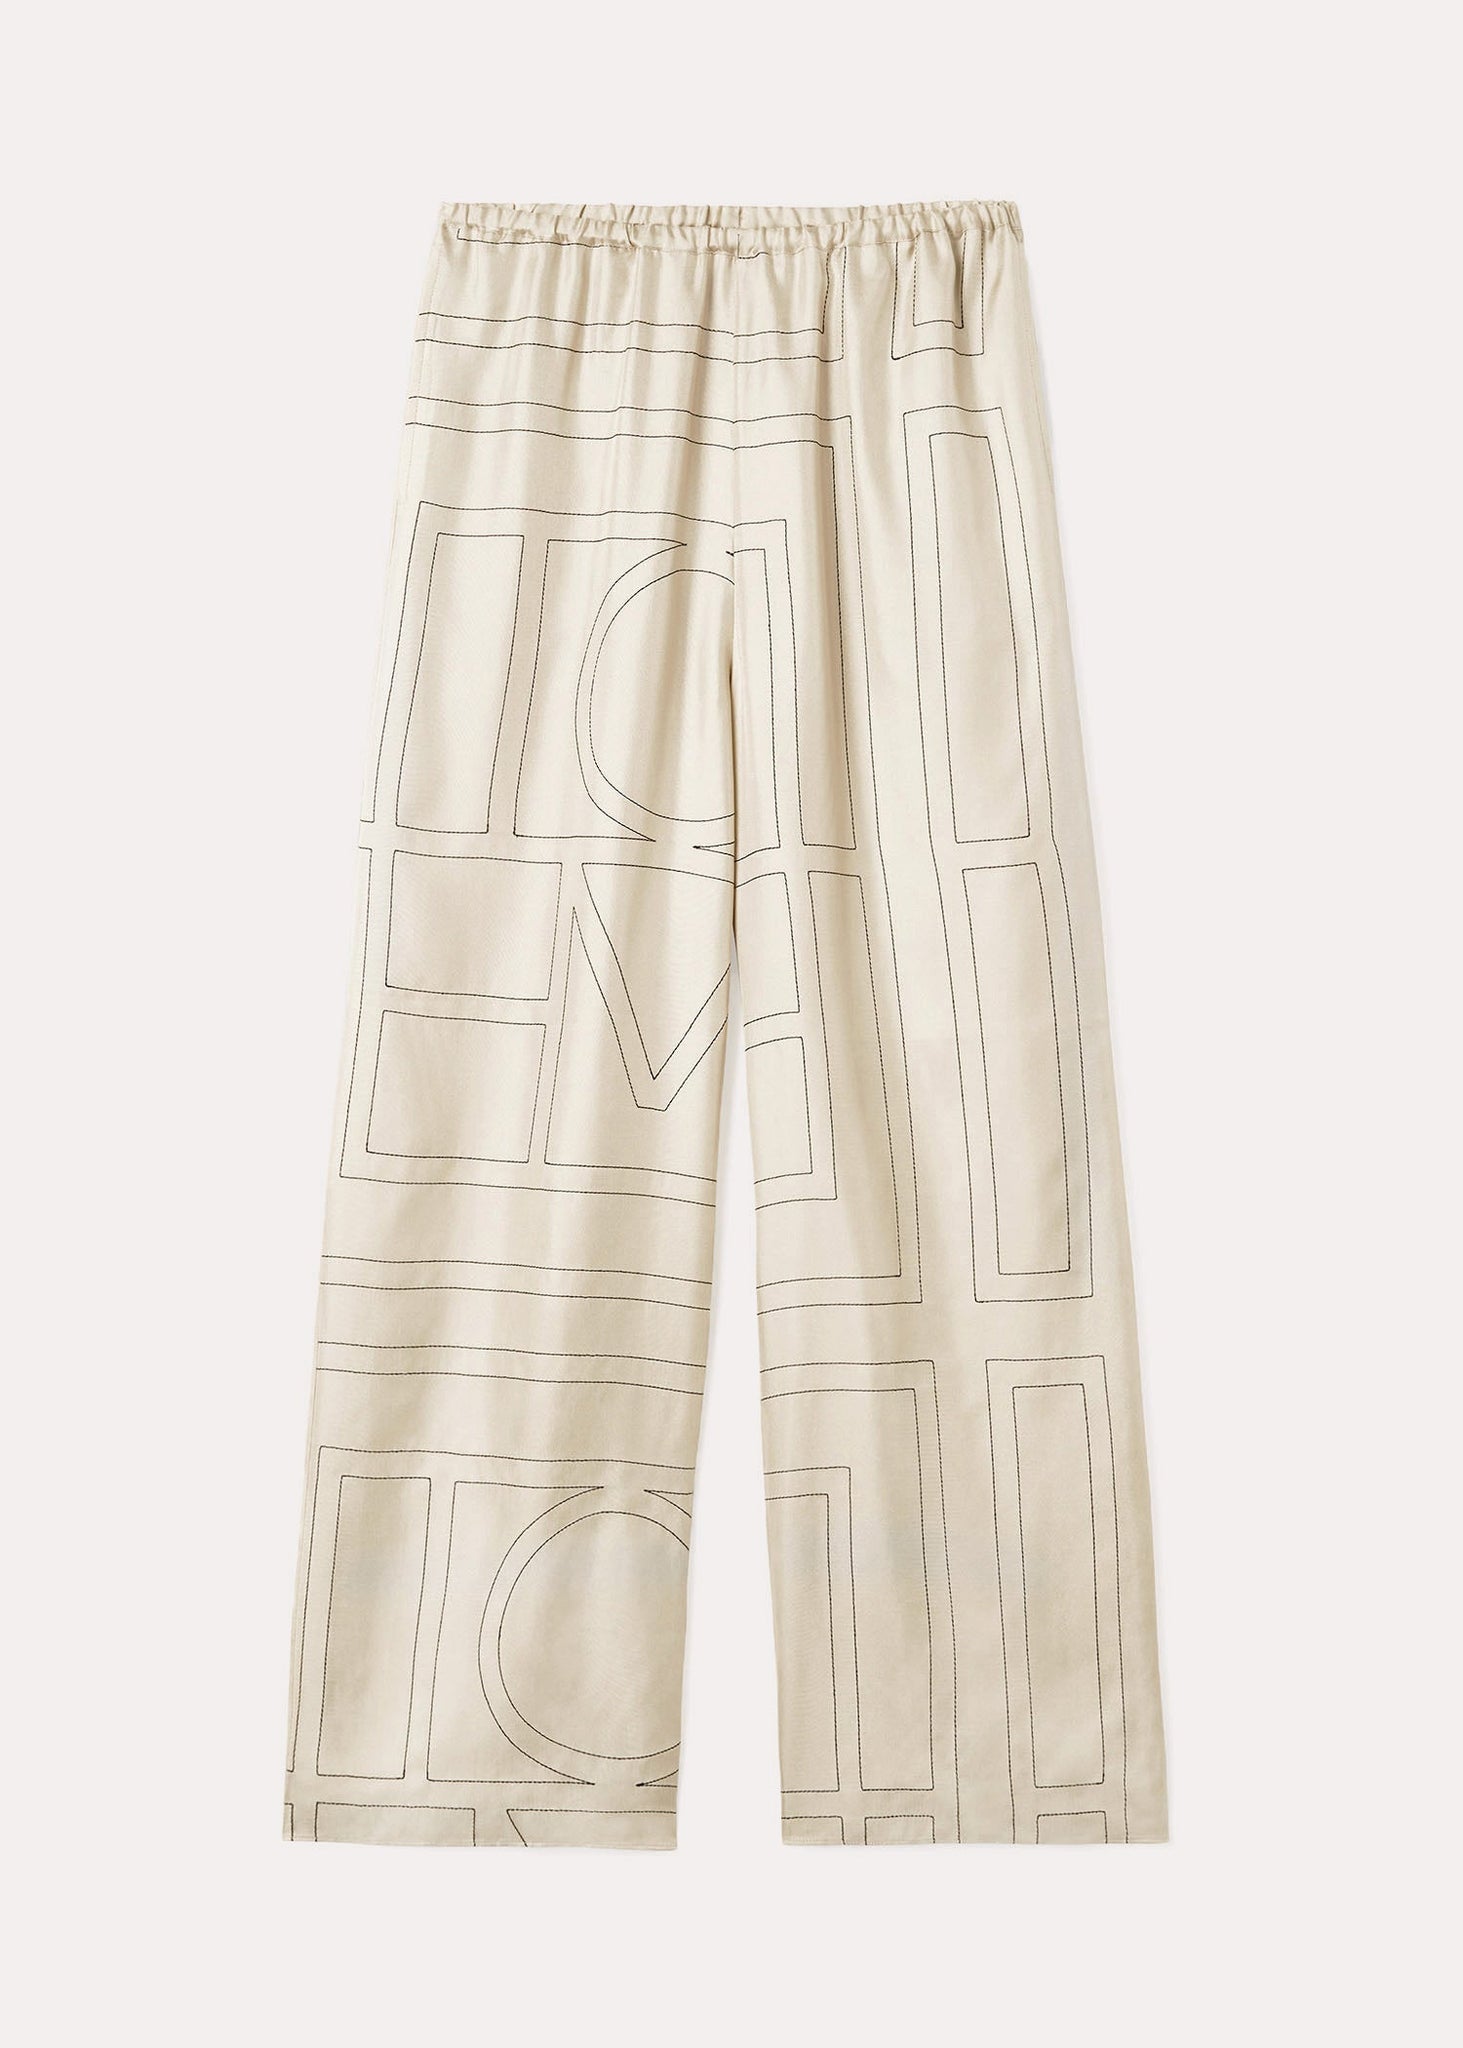 Monogram silk pajama shorts by Toteme